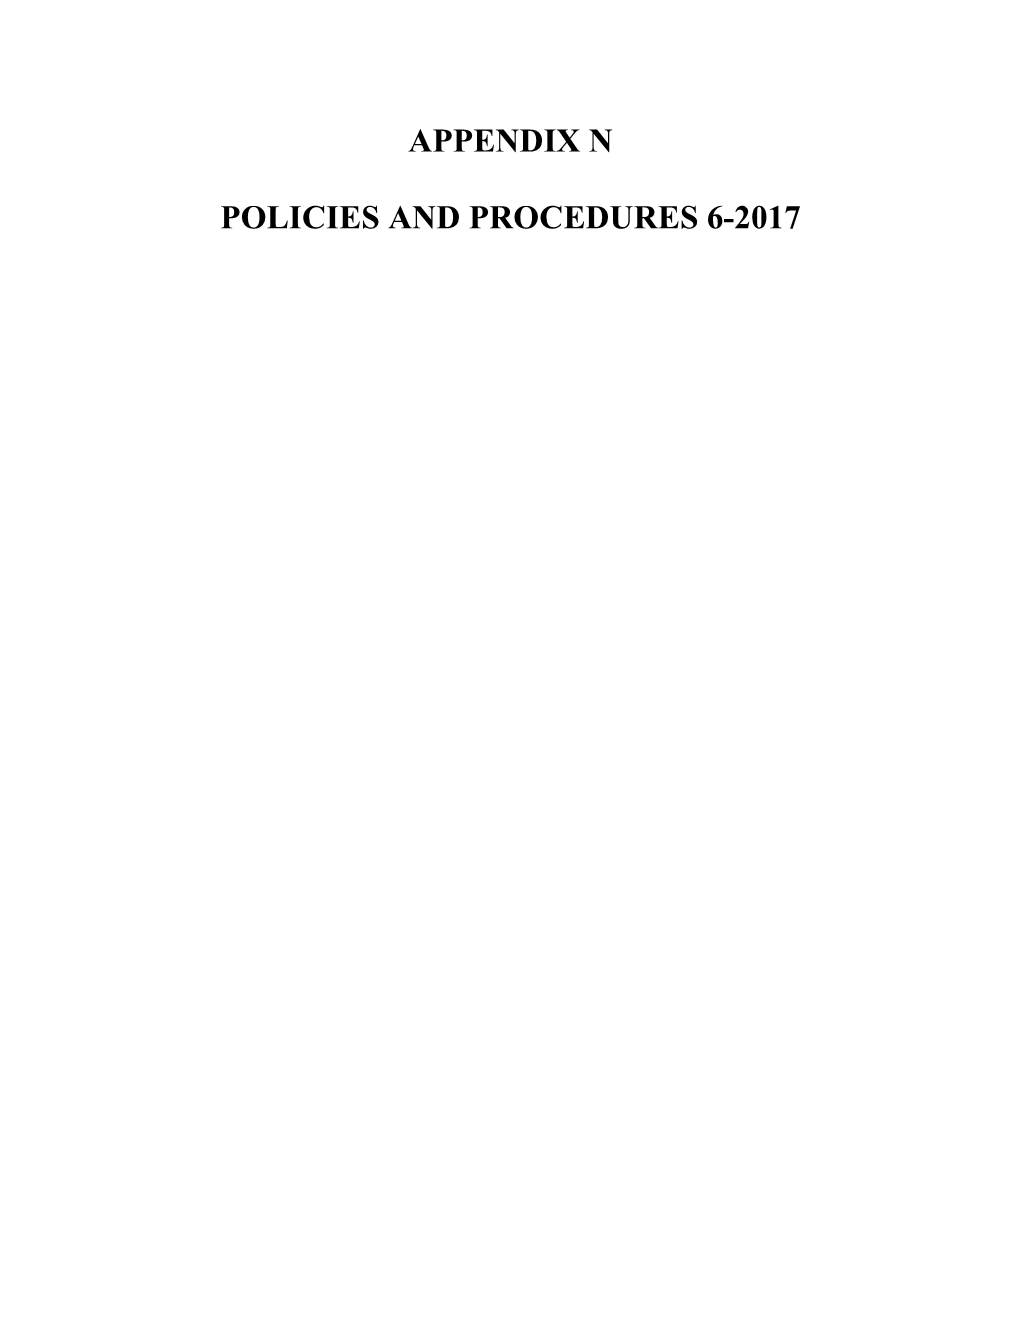 Appendix N Policies and Procedures 6-2017